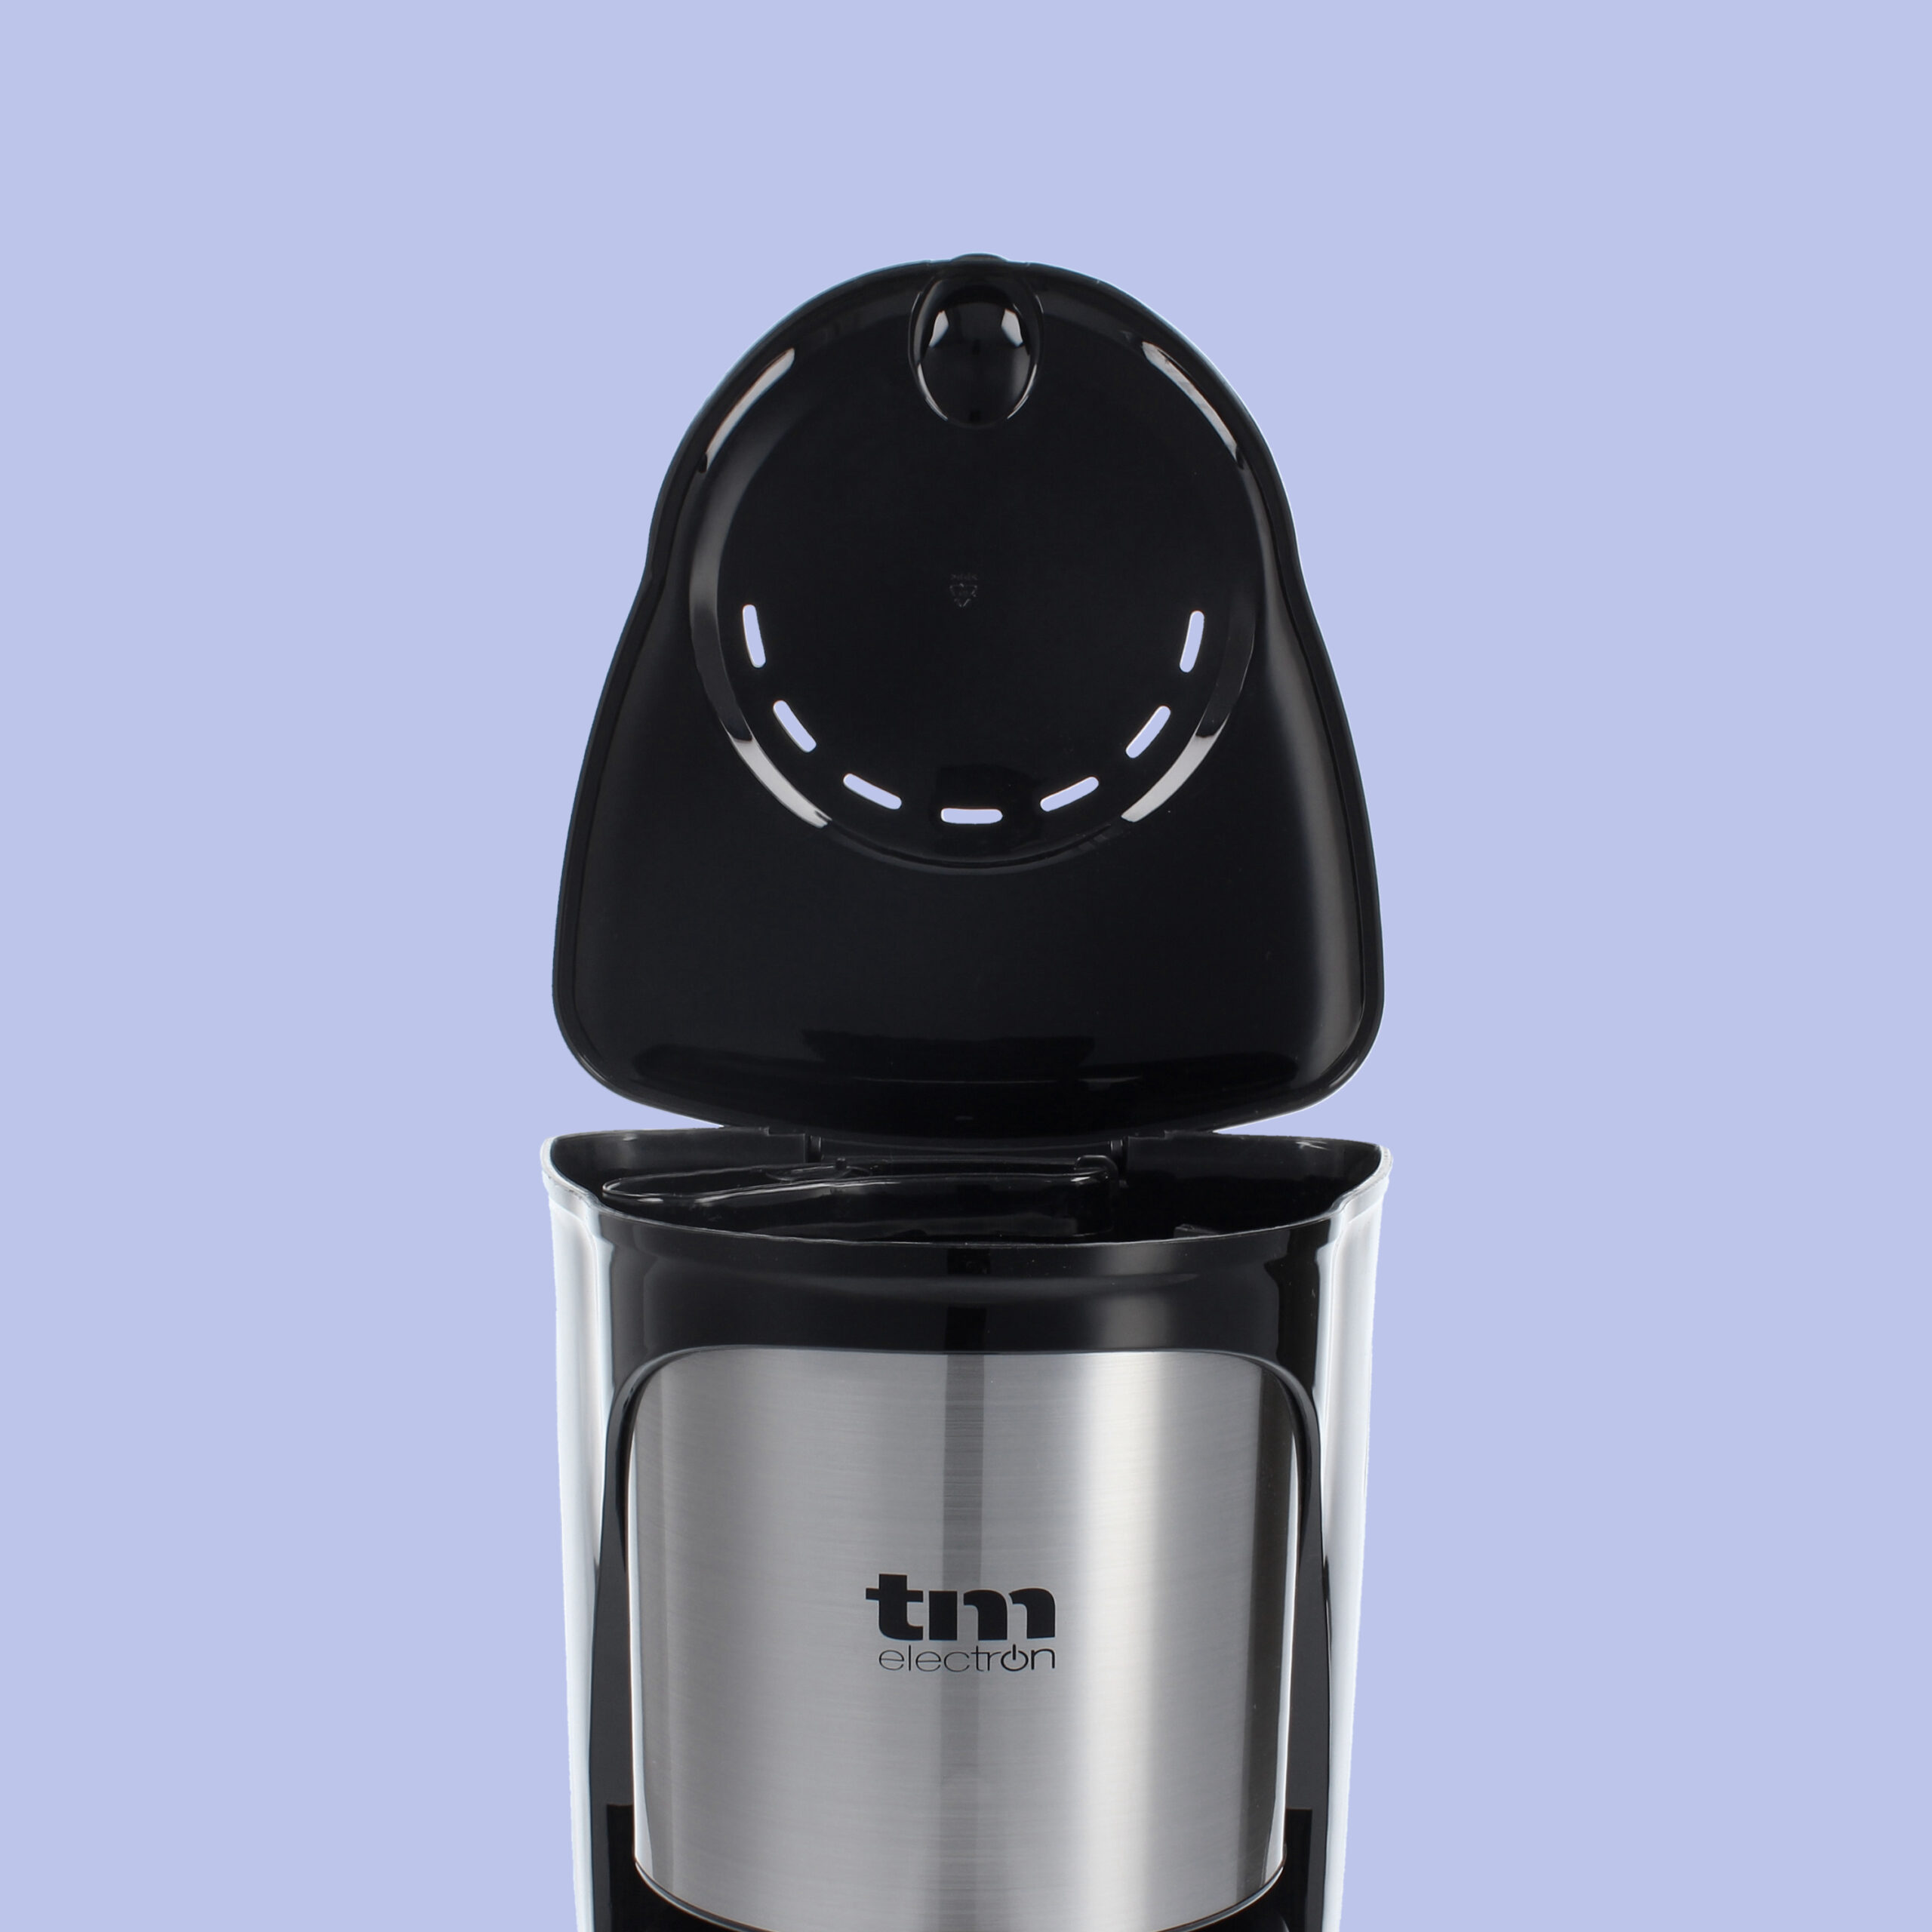 Calentador de tazas y vasos WHK-120 - Cafeteras de filtro. Sammic